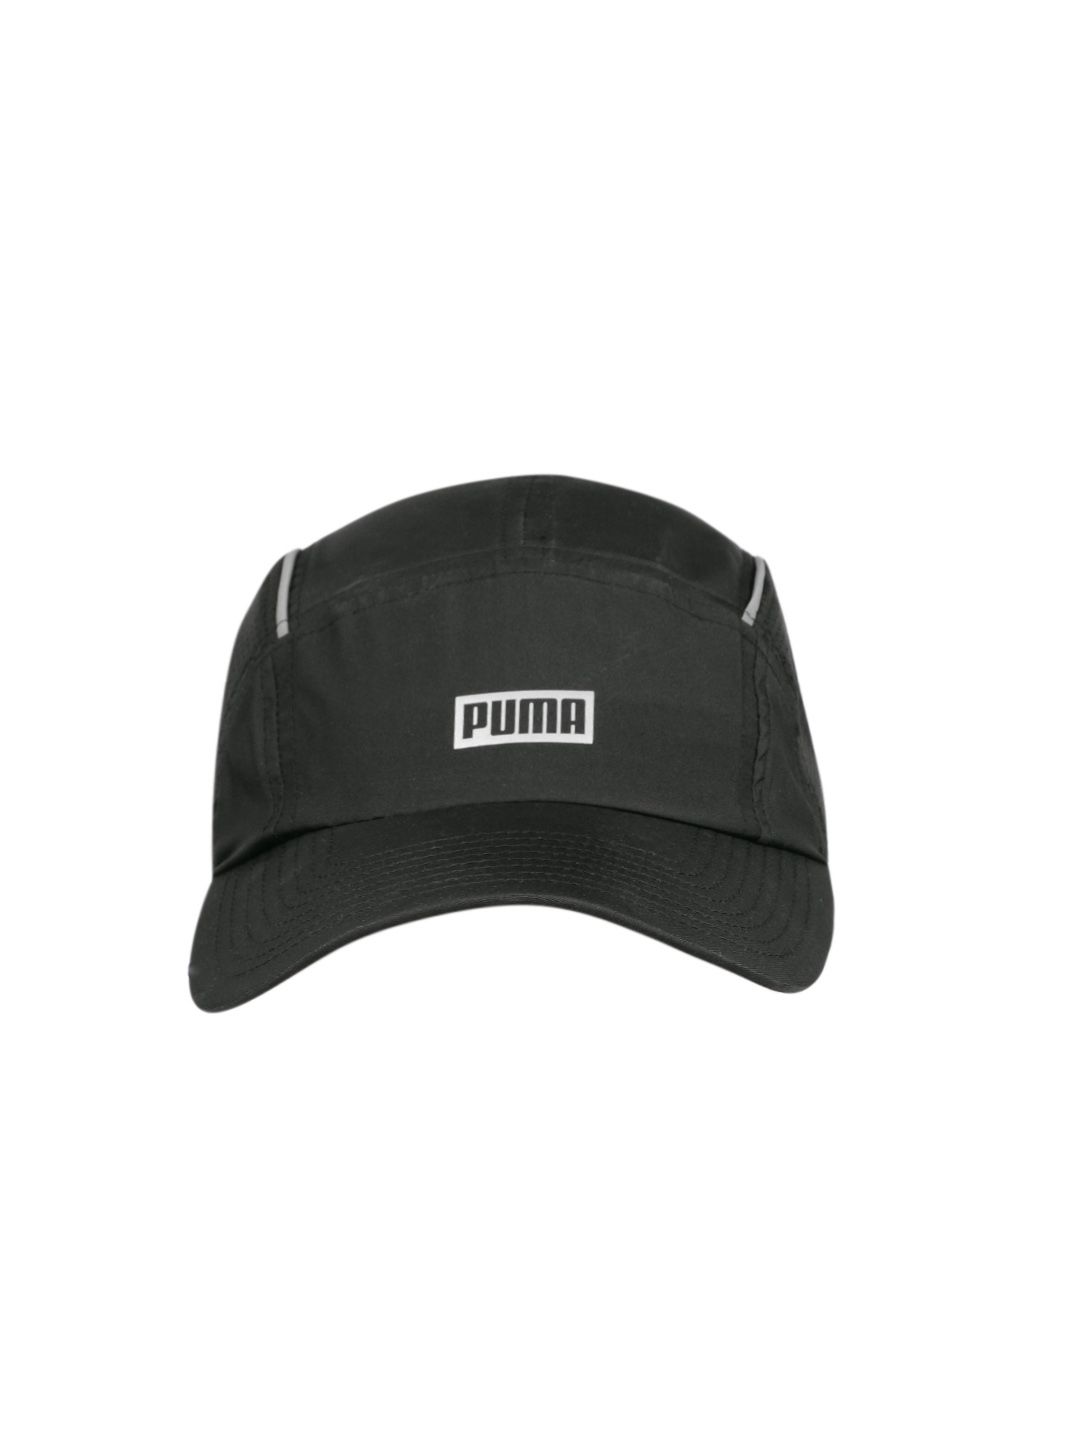 Puma Unisex Black Solid Baseball Cap Price in India